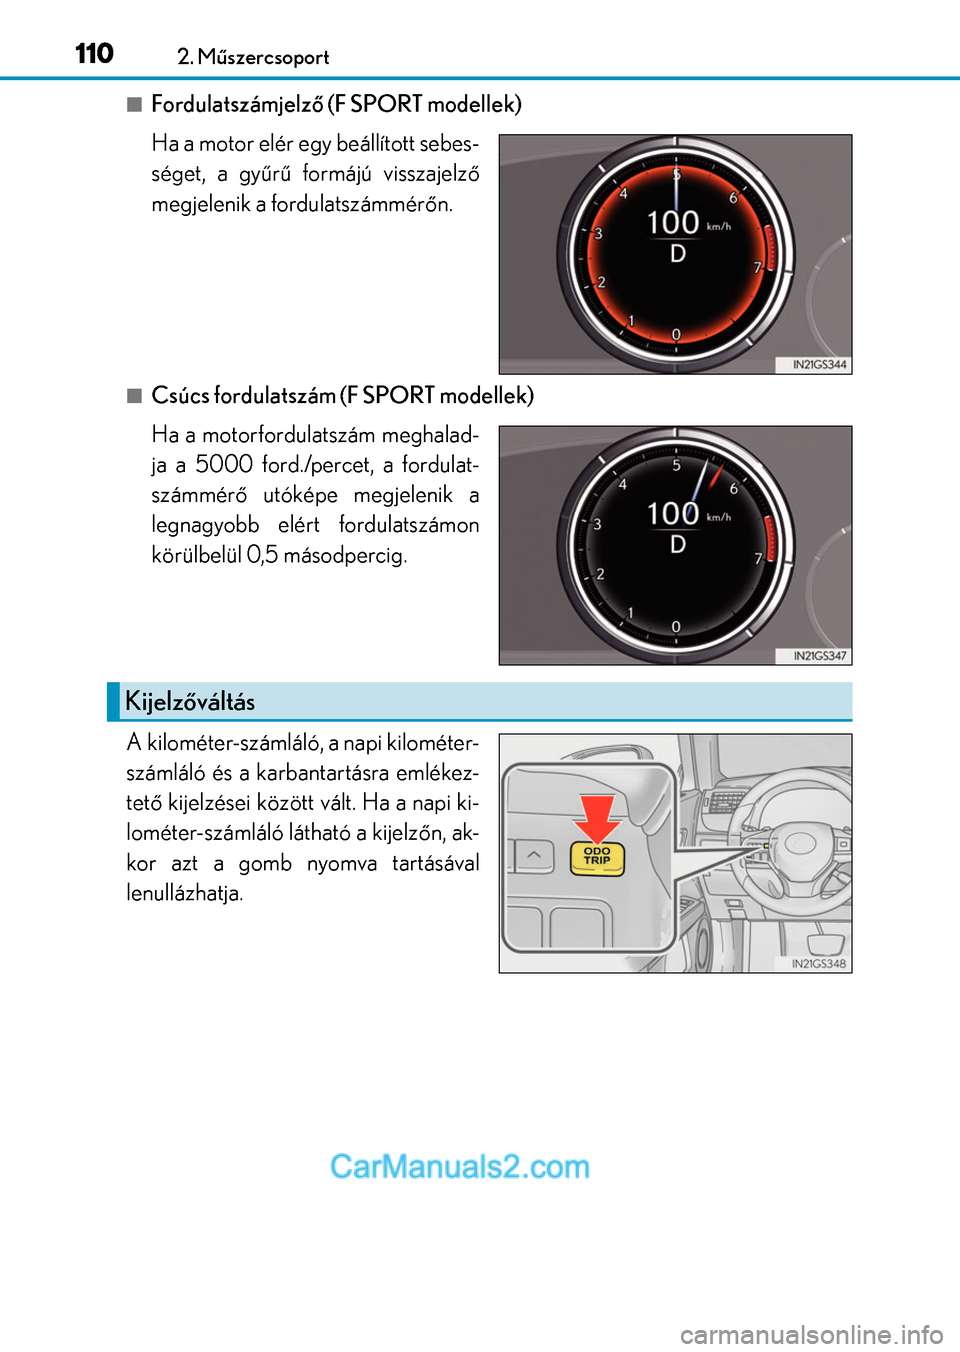 Lexus GS F 2015  Kezelési útmutató (in Hungarian) 1102. Műszercsoport
Fordulatszámjelző (F SPORT modellek)
Ha a motor elér egy beállított sebes-
séget, a gyűrű formájú visszajelző
megjelenik a fordulatszámmérőn.
Csúcs fordulatsz